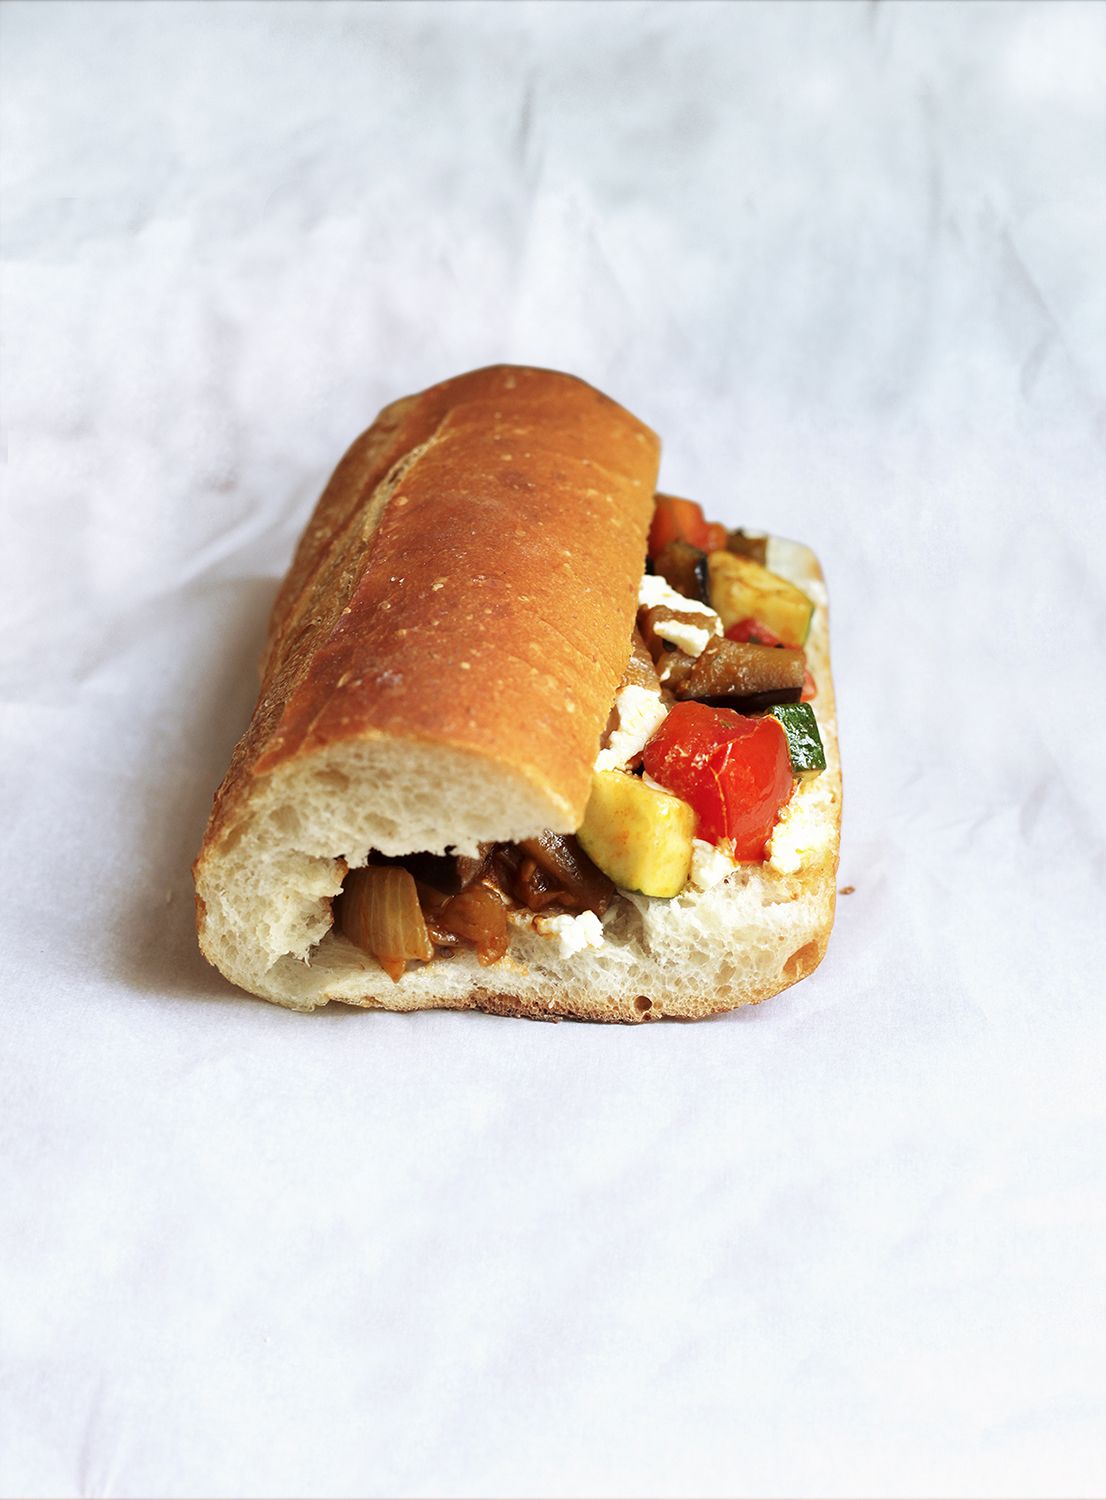 8 แซนด์วิชแสนอร่อยที่ออกแบบมาเพื่อเอาตัวรอดในถุงอาหารกลางวัน